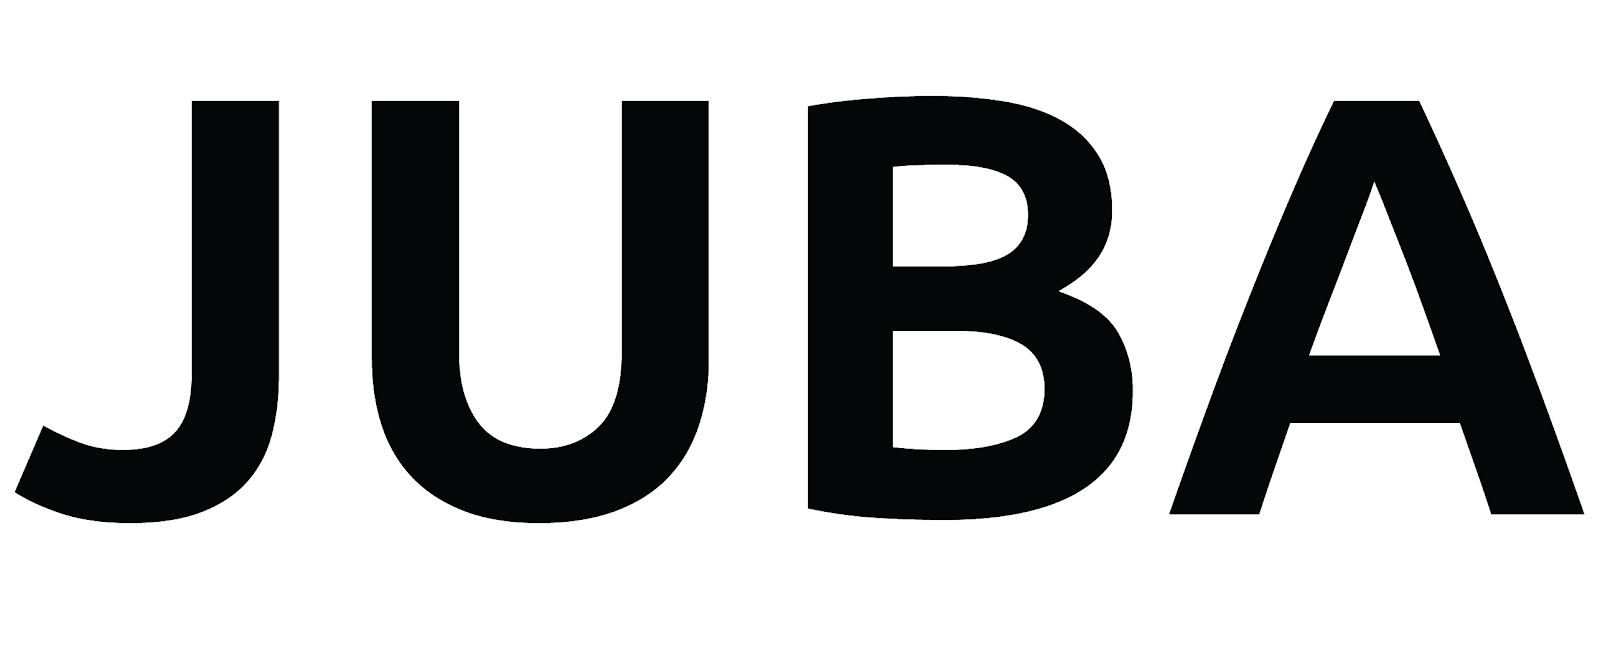 Company logo: JUBA.